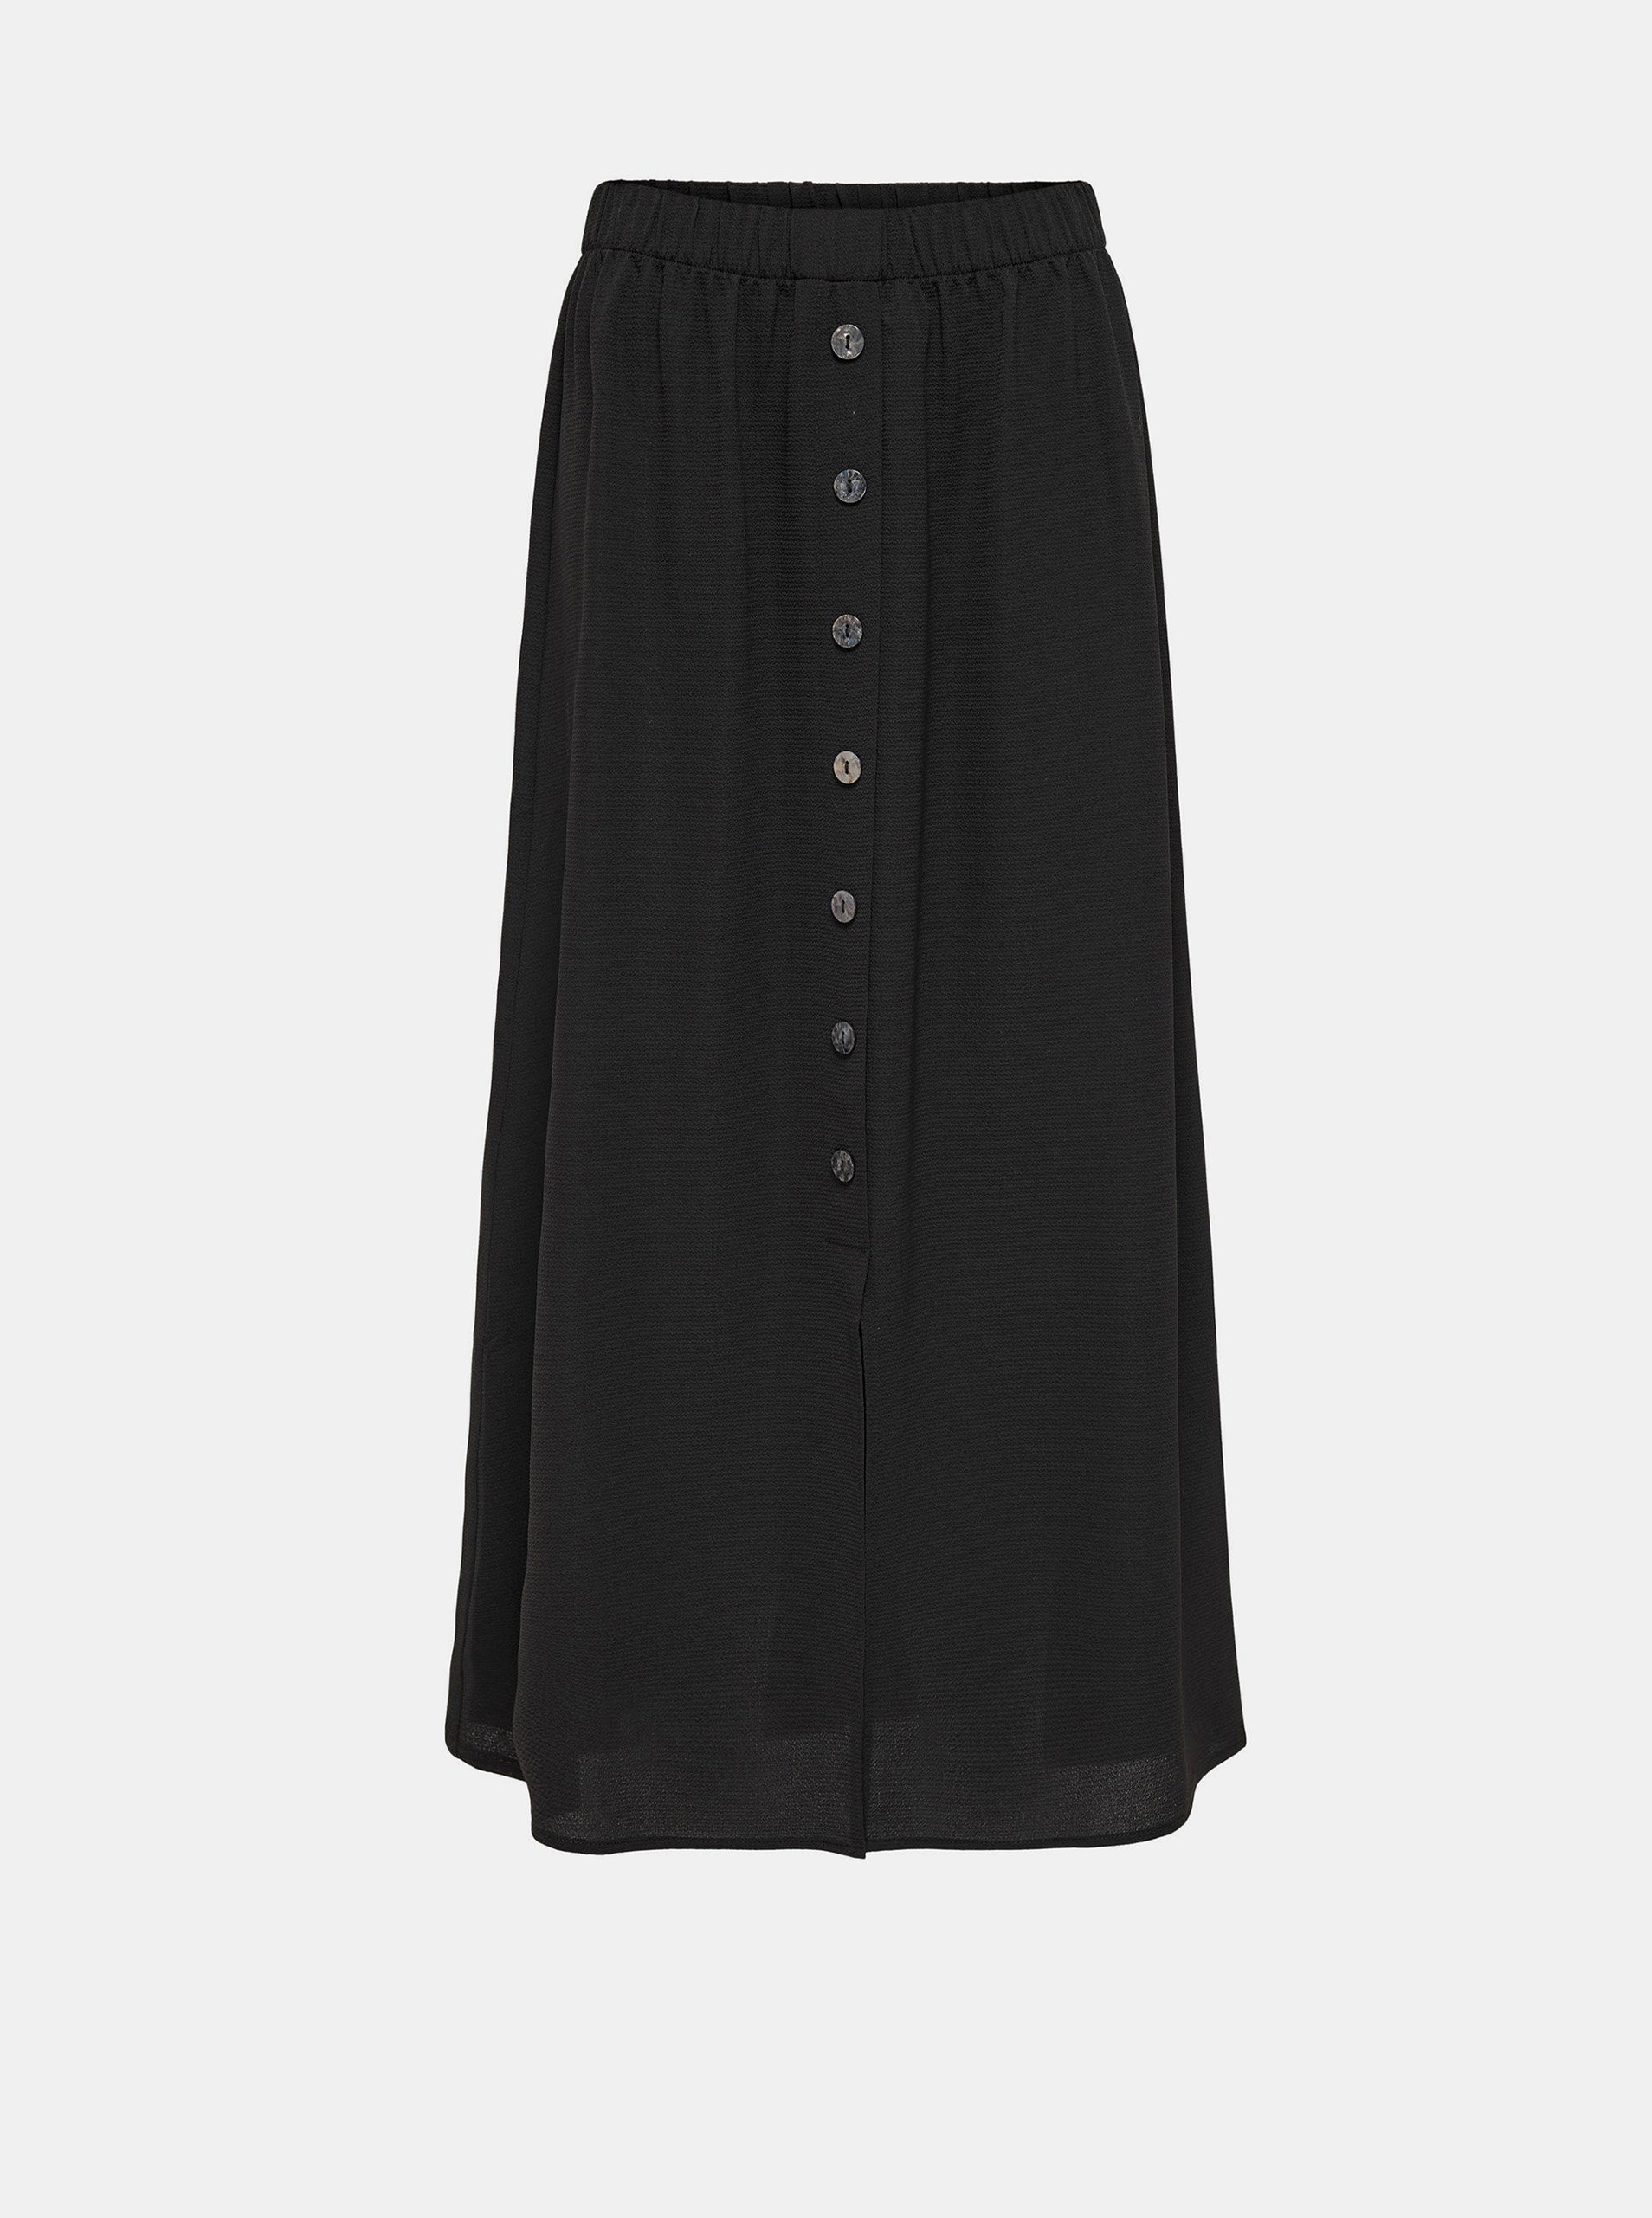 Černá maxi sukně s knoflíky ONLY Nova